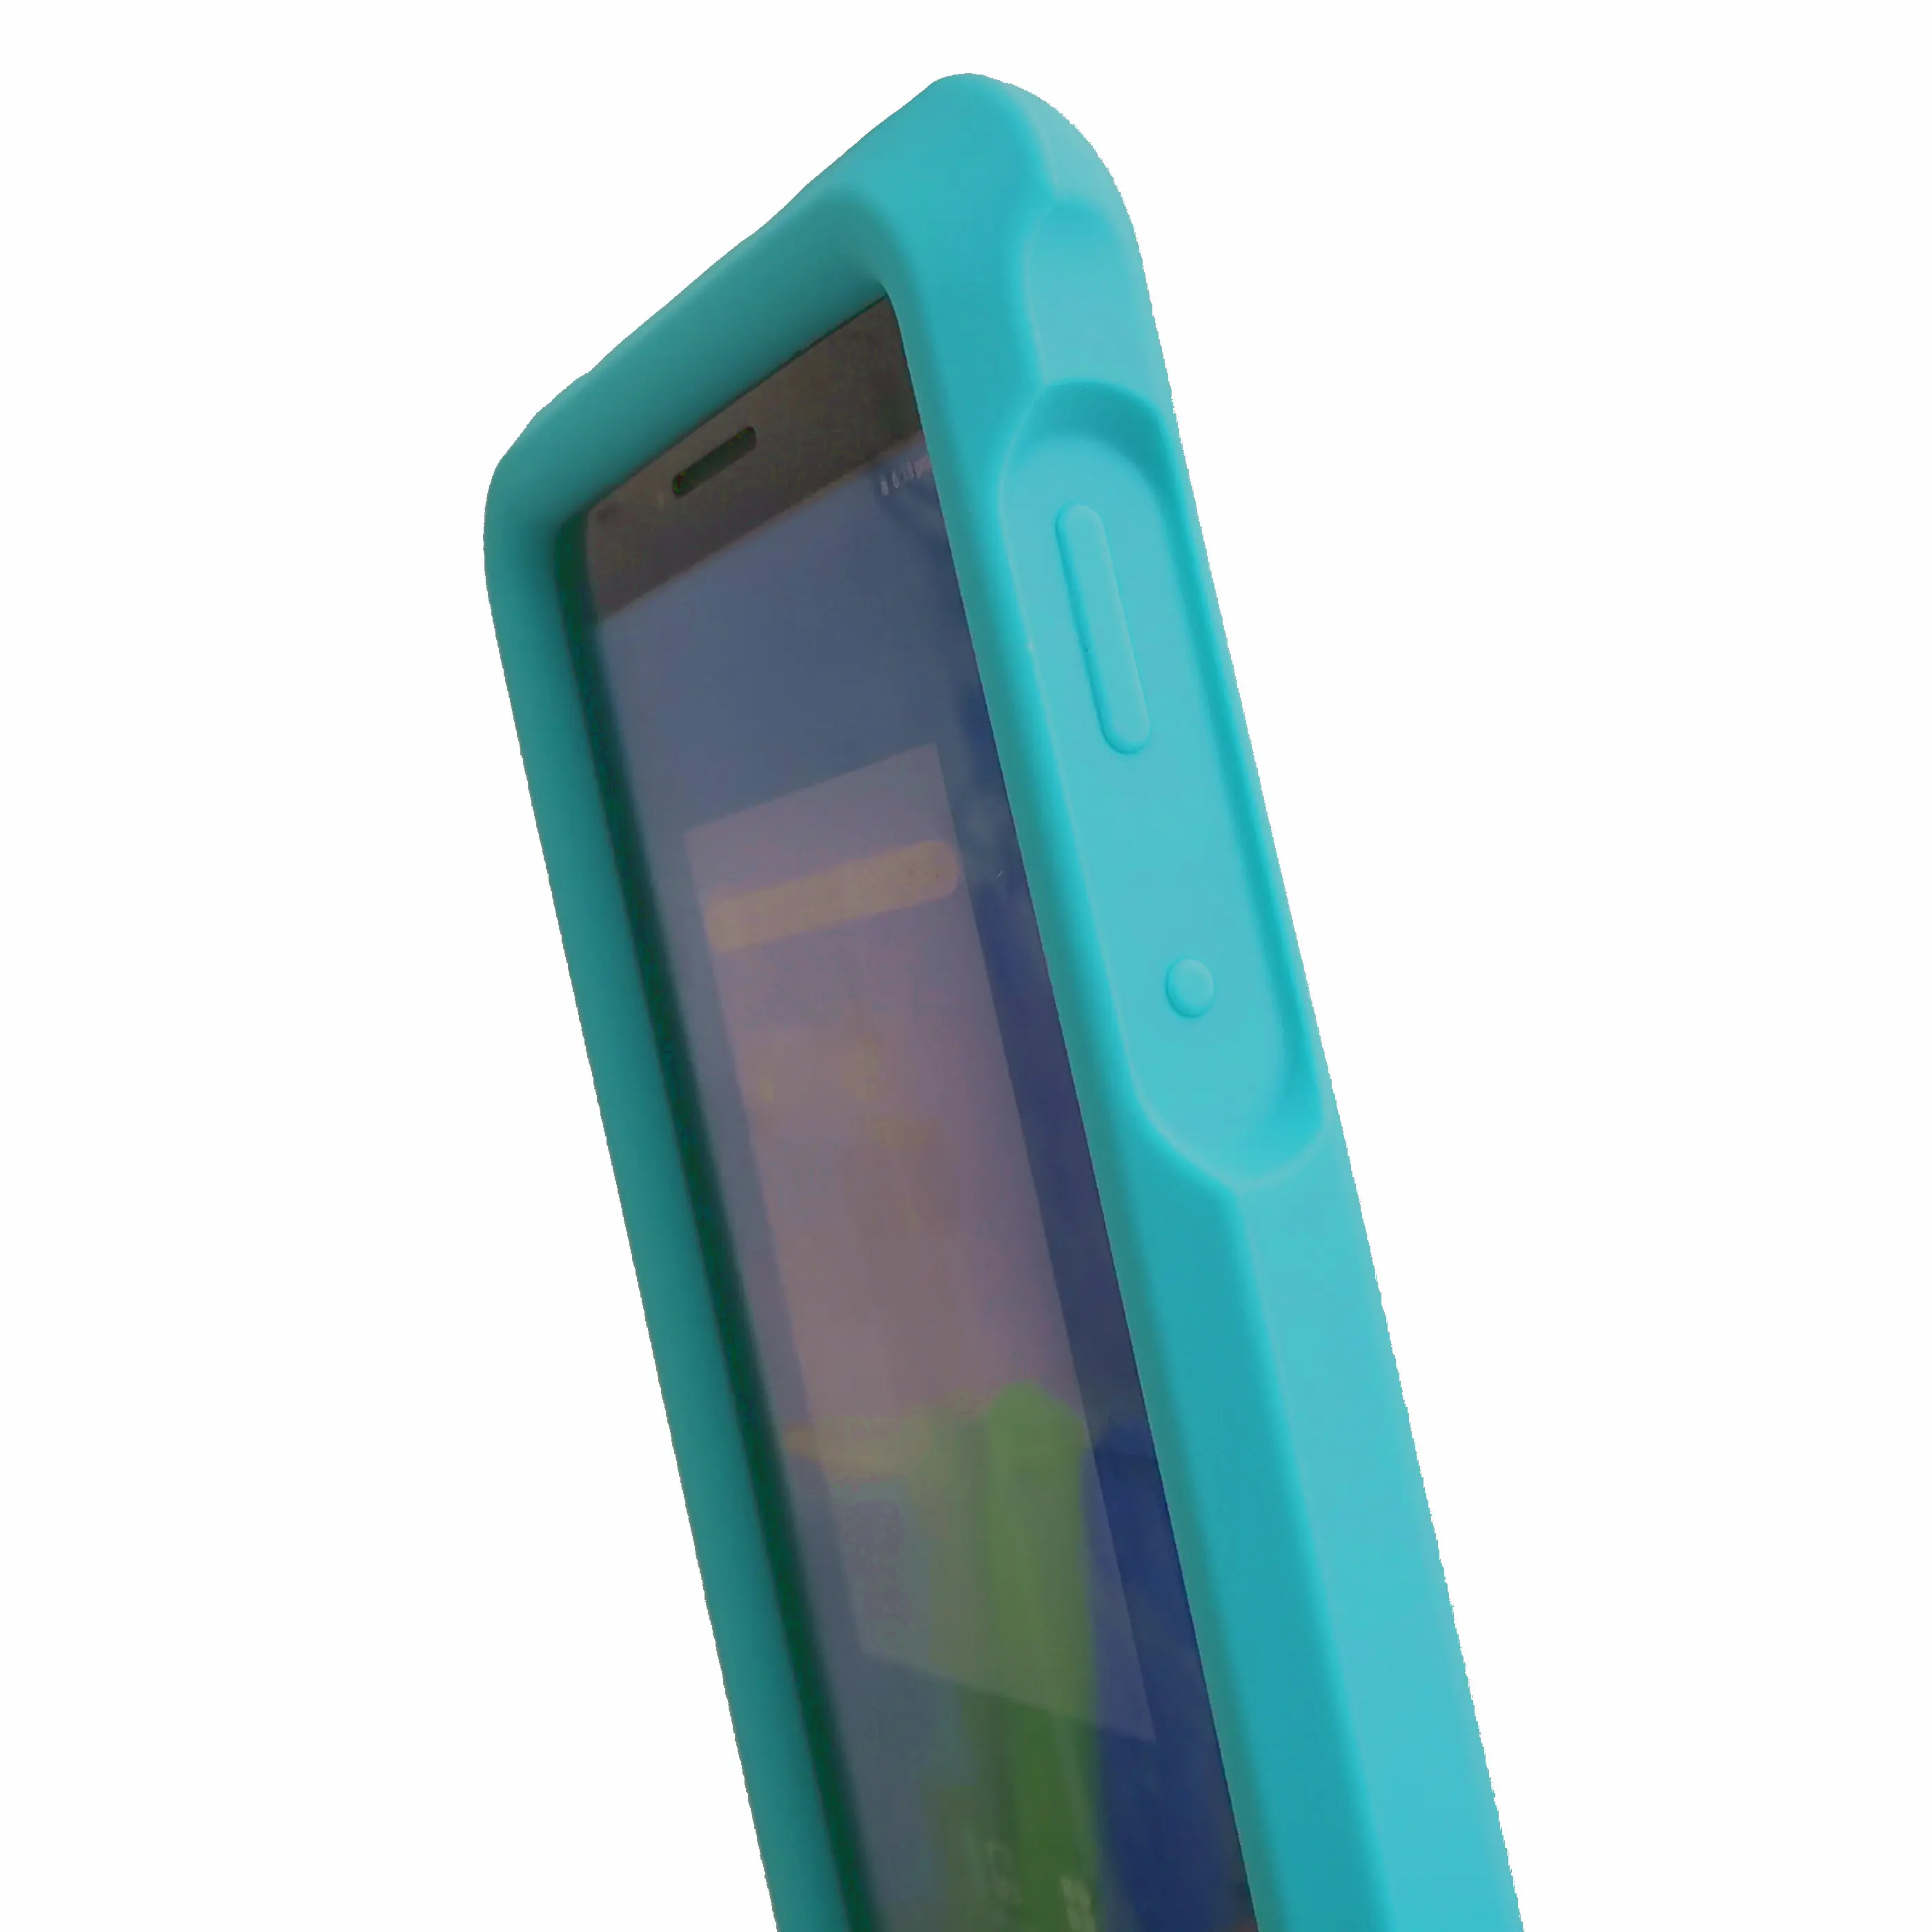 Подпрыгивающий детский E 7 чехол для планшета lenovo Tab E7 модель TB-7104 F/N 7,0 бампер противоударный силиконовый Прочный чехол для планшета